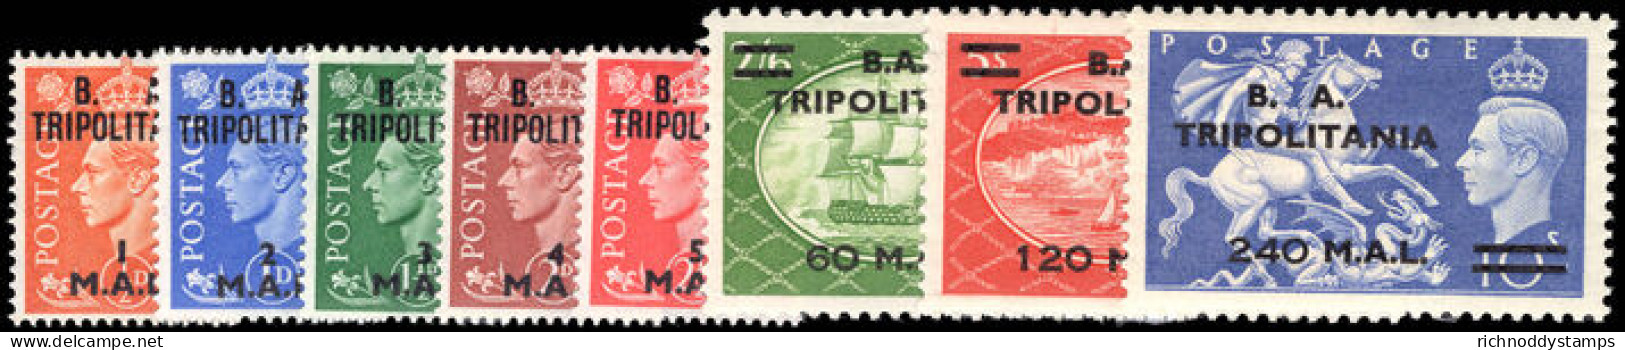 Tripolitania 1951 Set Lightly Mounted Mint. - Tripolitania